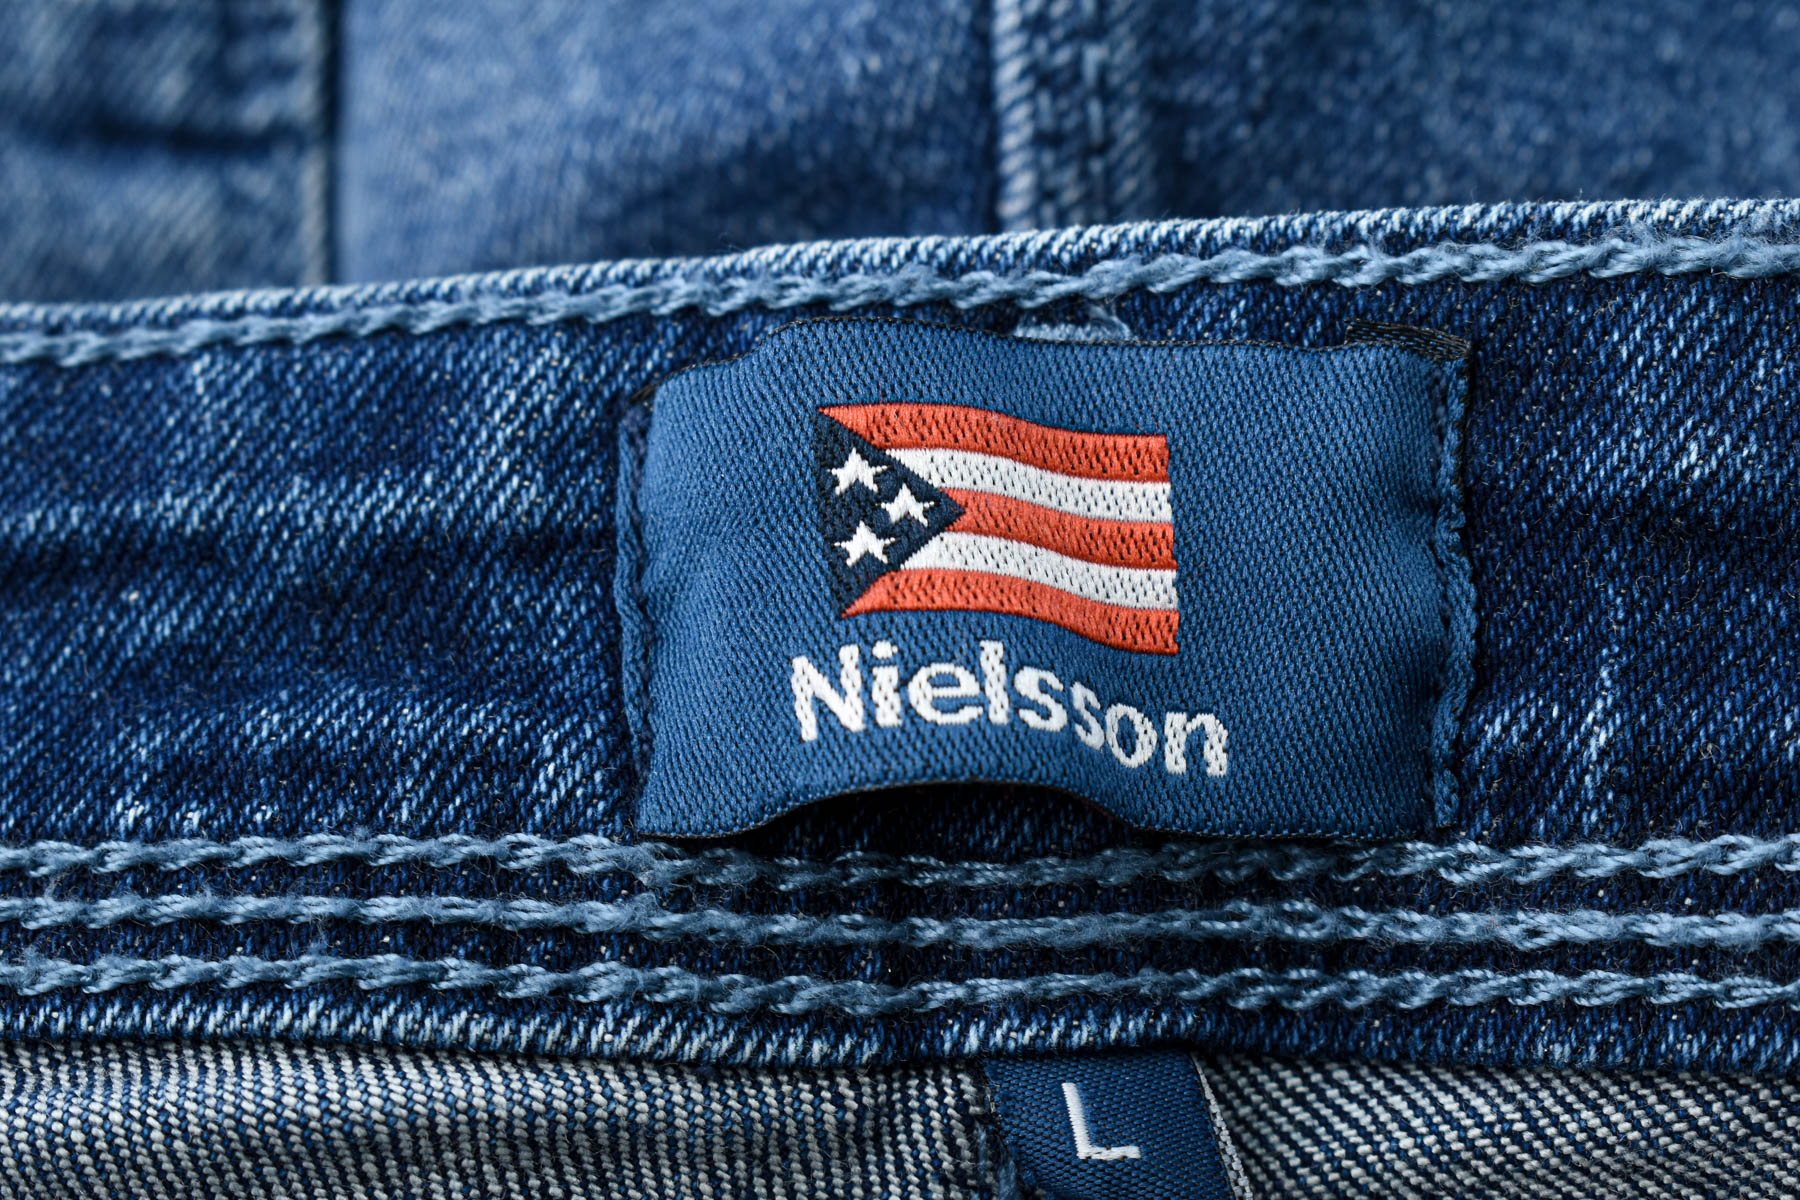 Women's jeans - Nielsson - 2